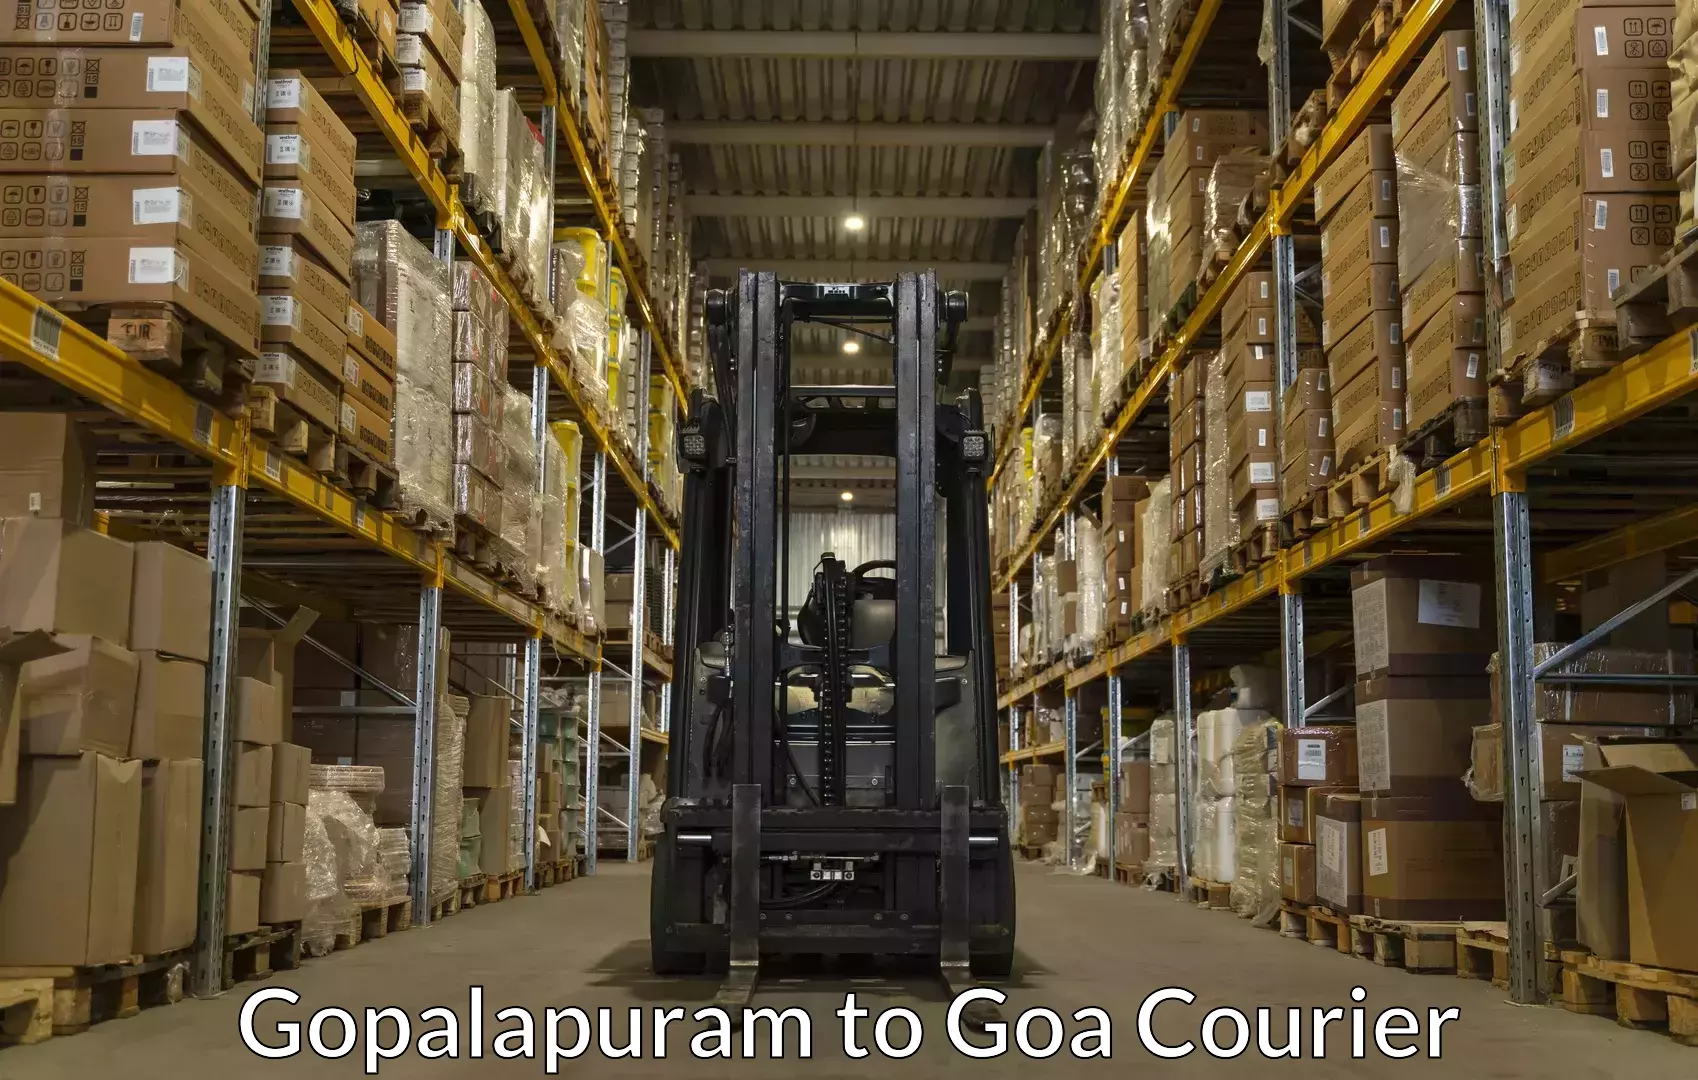 Home relocation experts Gopalapuram to South Goa